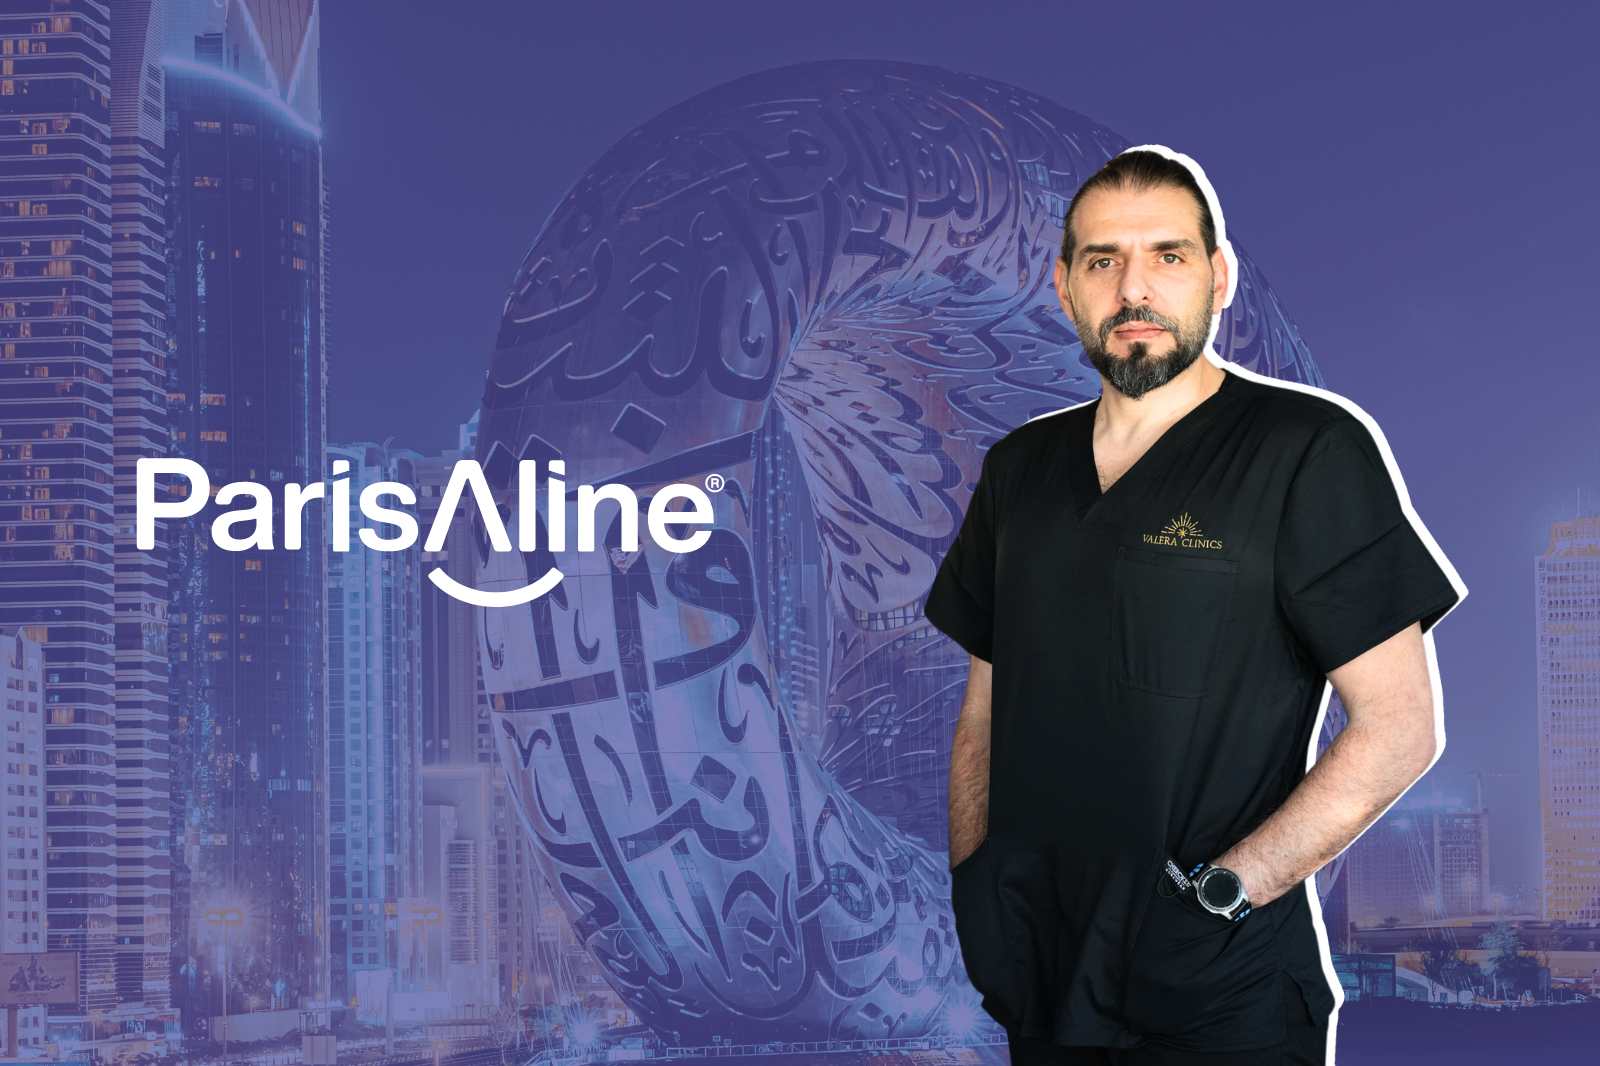 ParisAline annonce un nouveau partenariat avec le Dr Mouhannad Shahin et la clinique Marvel à Dubaï